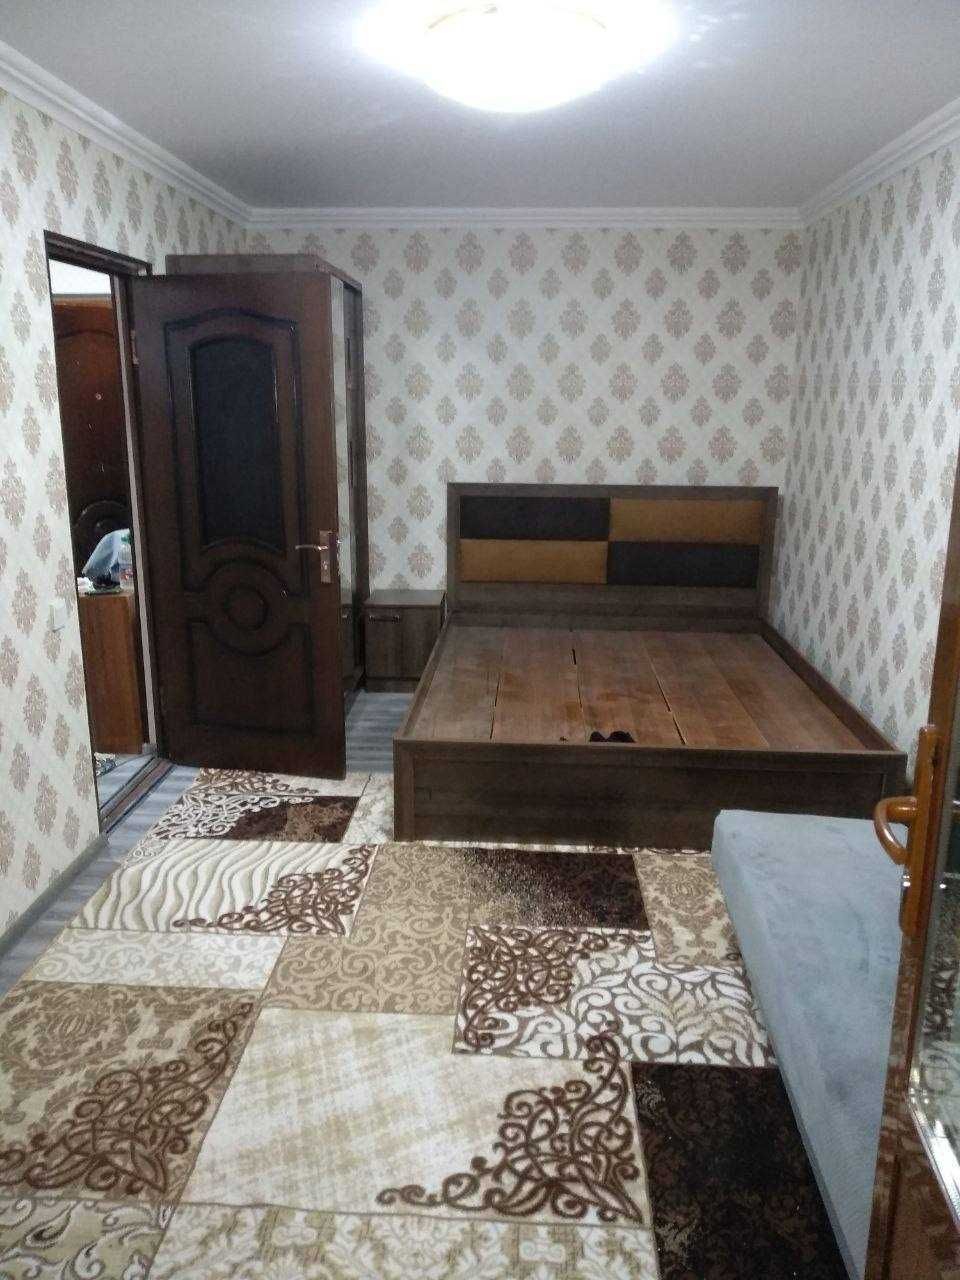 СУПЕРЦЕНА! 1-комнатная квартира на НОВОМОСКОВСКОЙ, Кирпичный дом